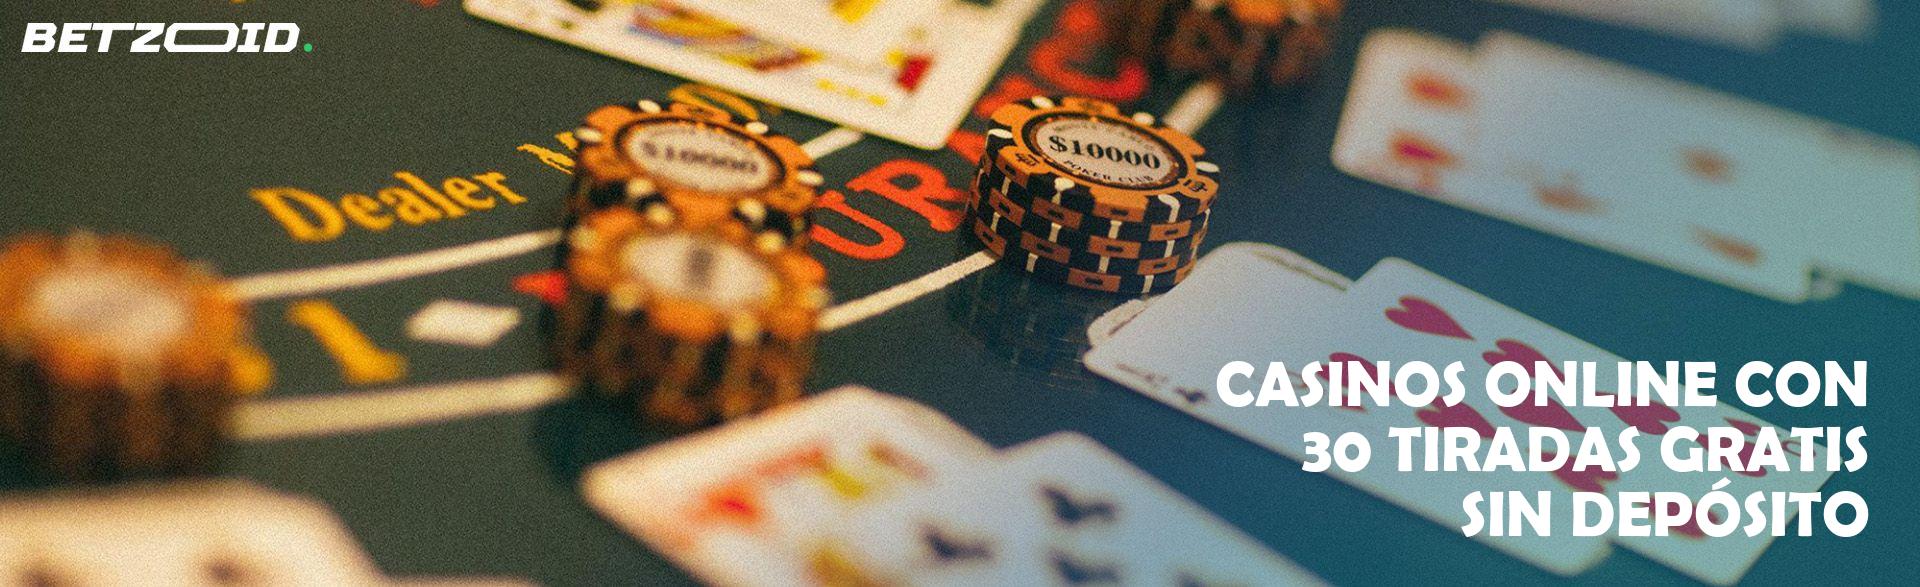 Casinos Online con 30 Tiradas Gratis sin Depósito.